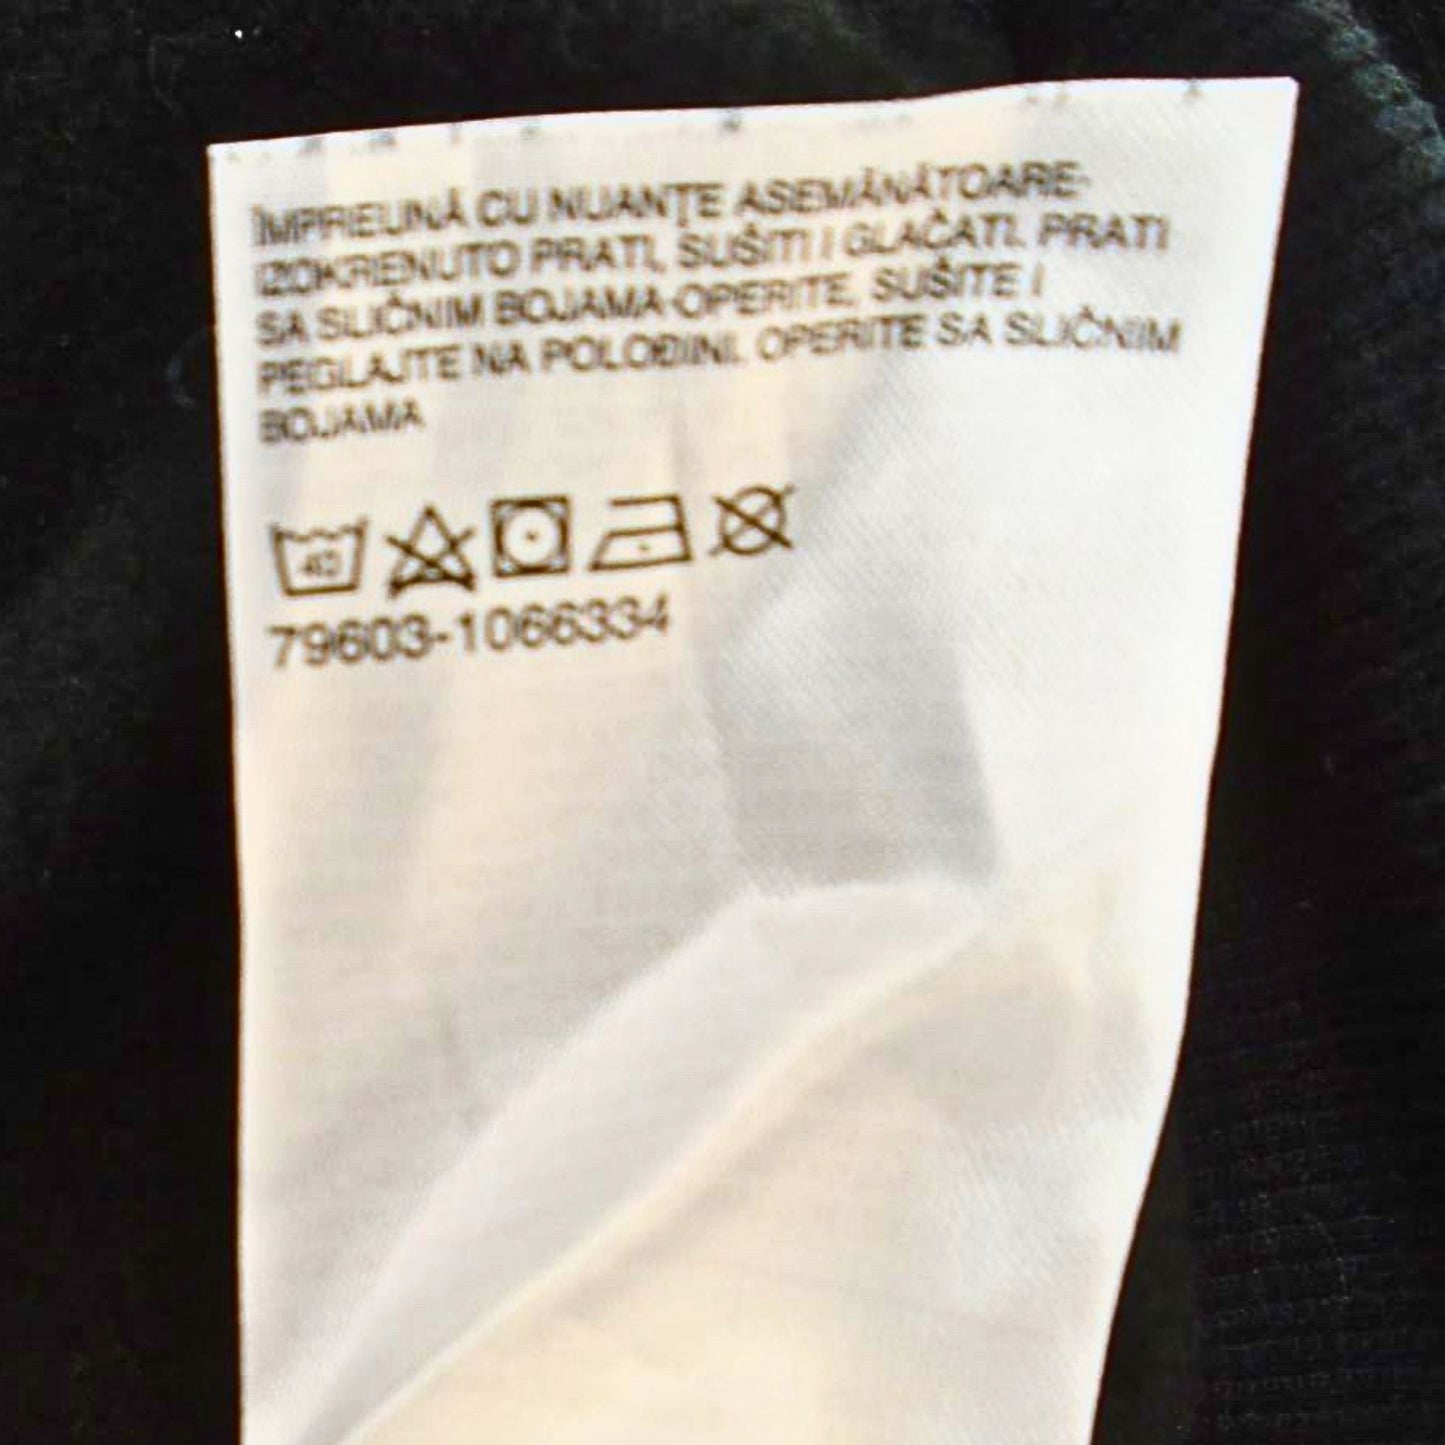 Herren-Sweatshirt von Angelo Litrico – Schwarz, Größe L, gebraucht. Guter Zustand